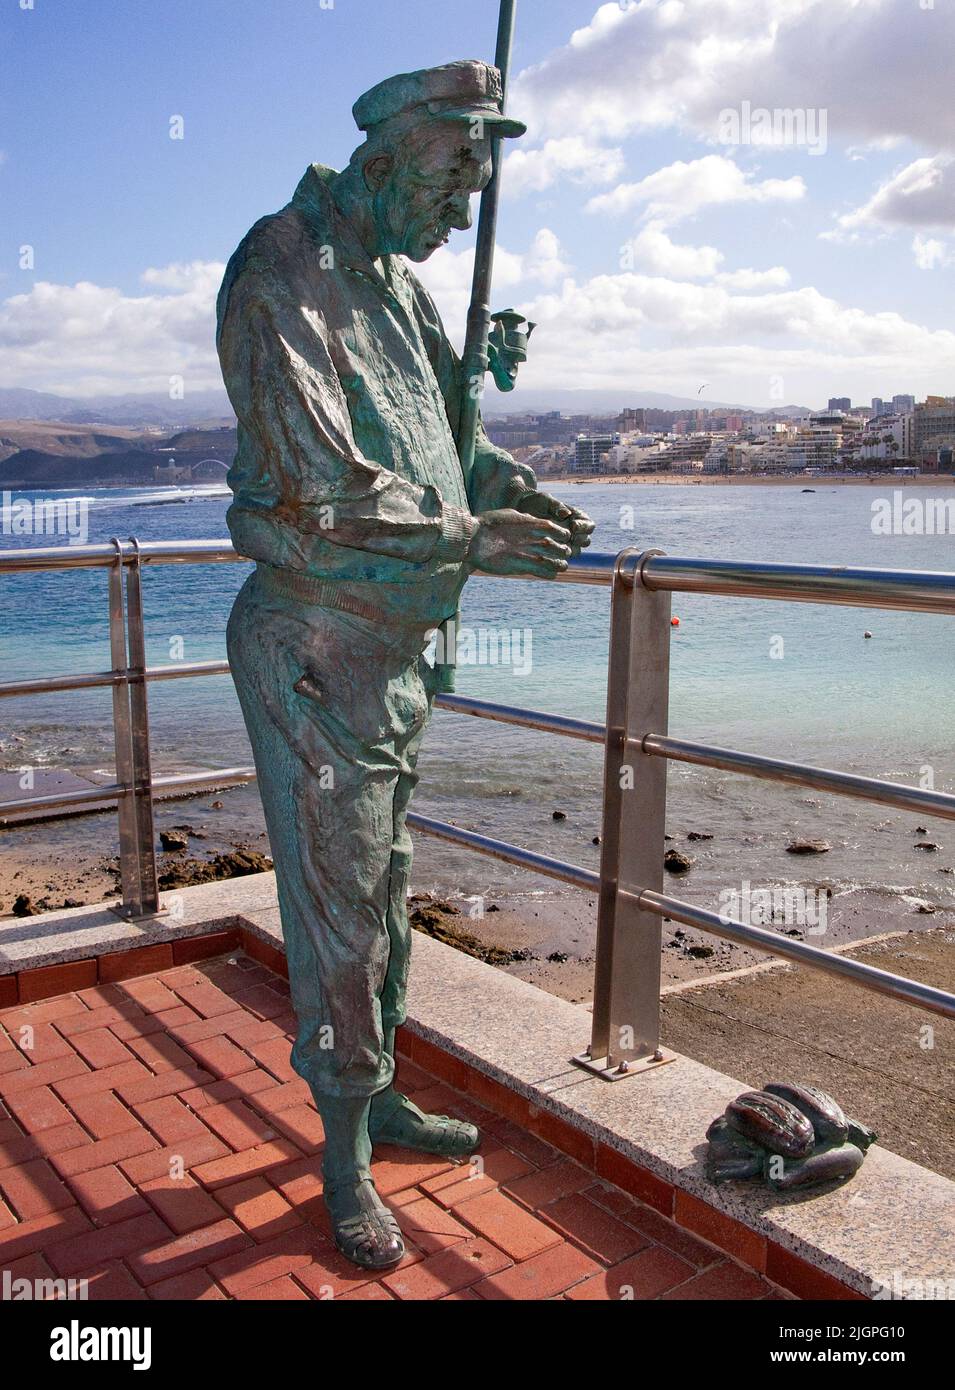 Statua di bronzo di un pescatore sul lungomare, Playa de las Canteras, Las Palmas, Grand Canary, Isole Canarie, Spagna, Europa Foto Stock